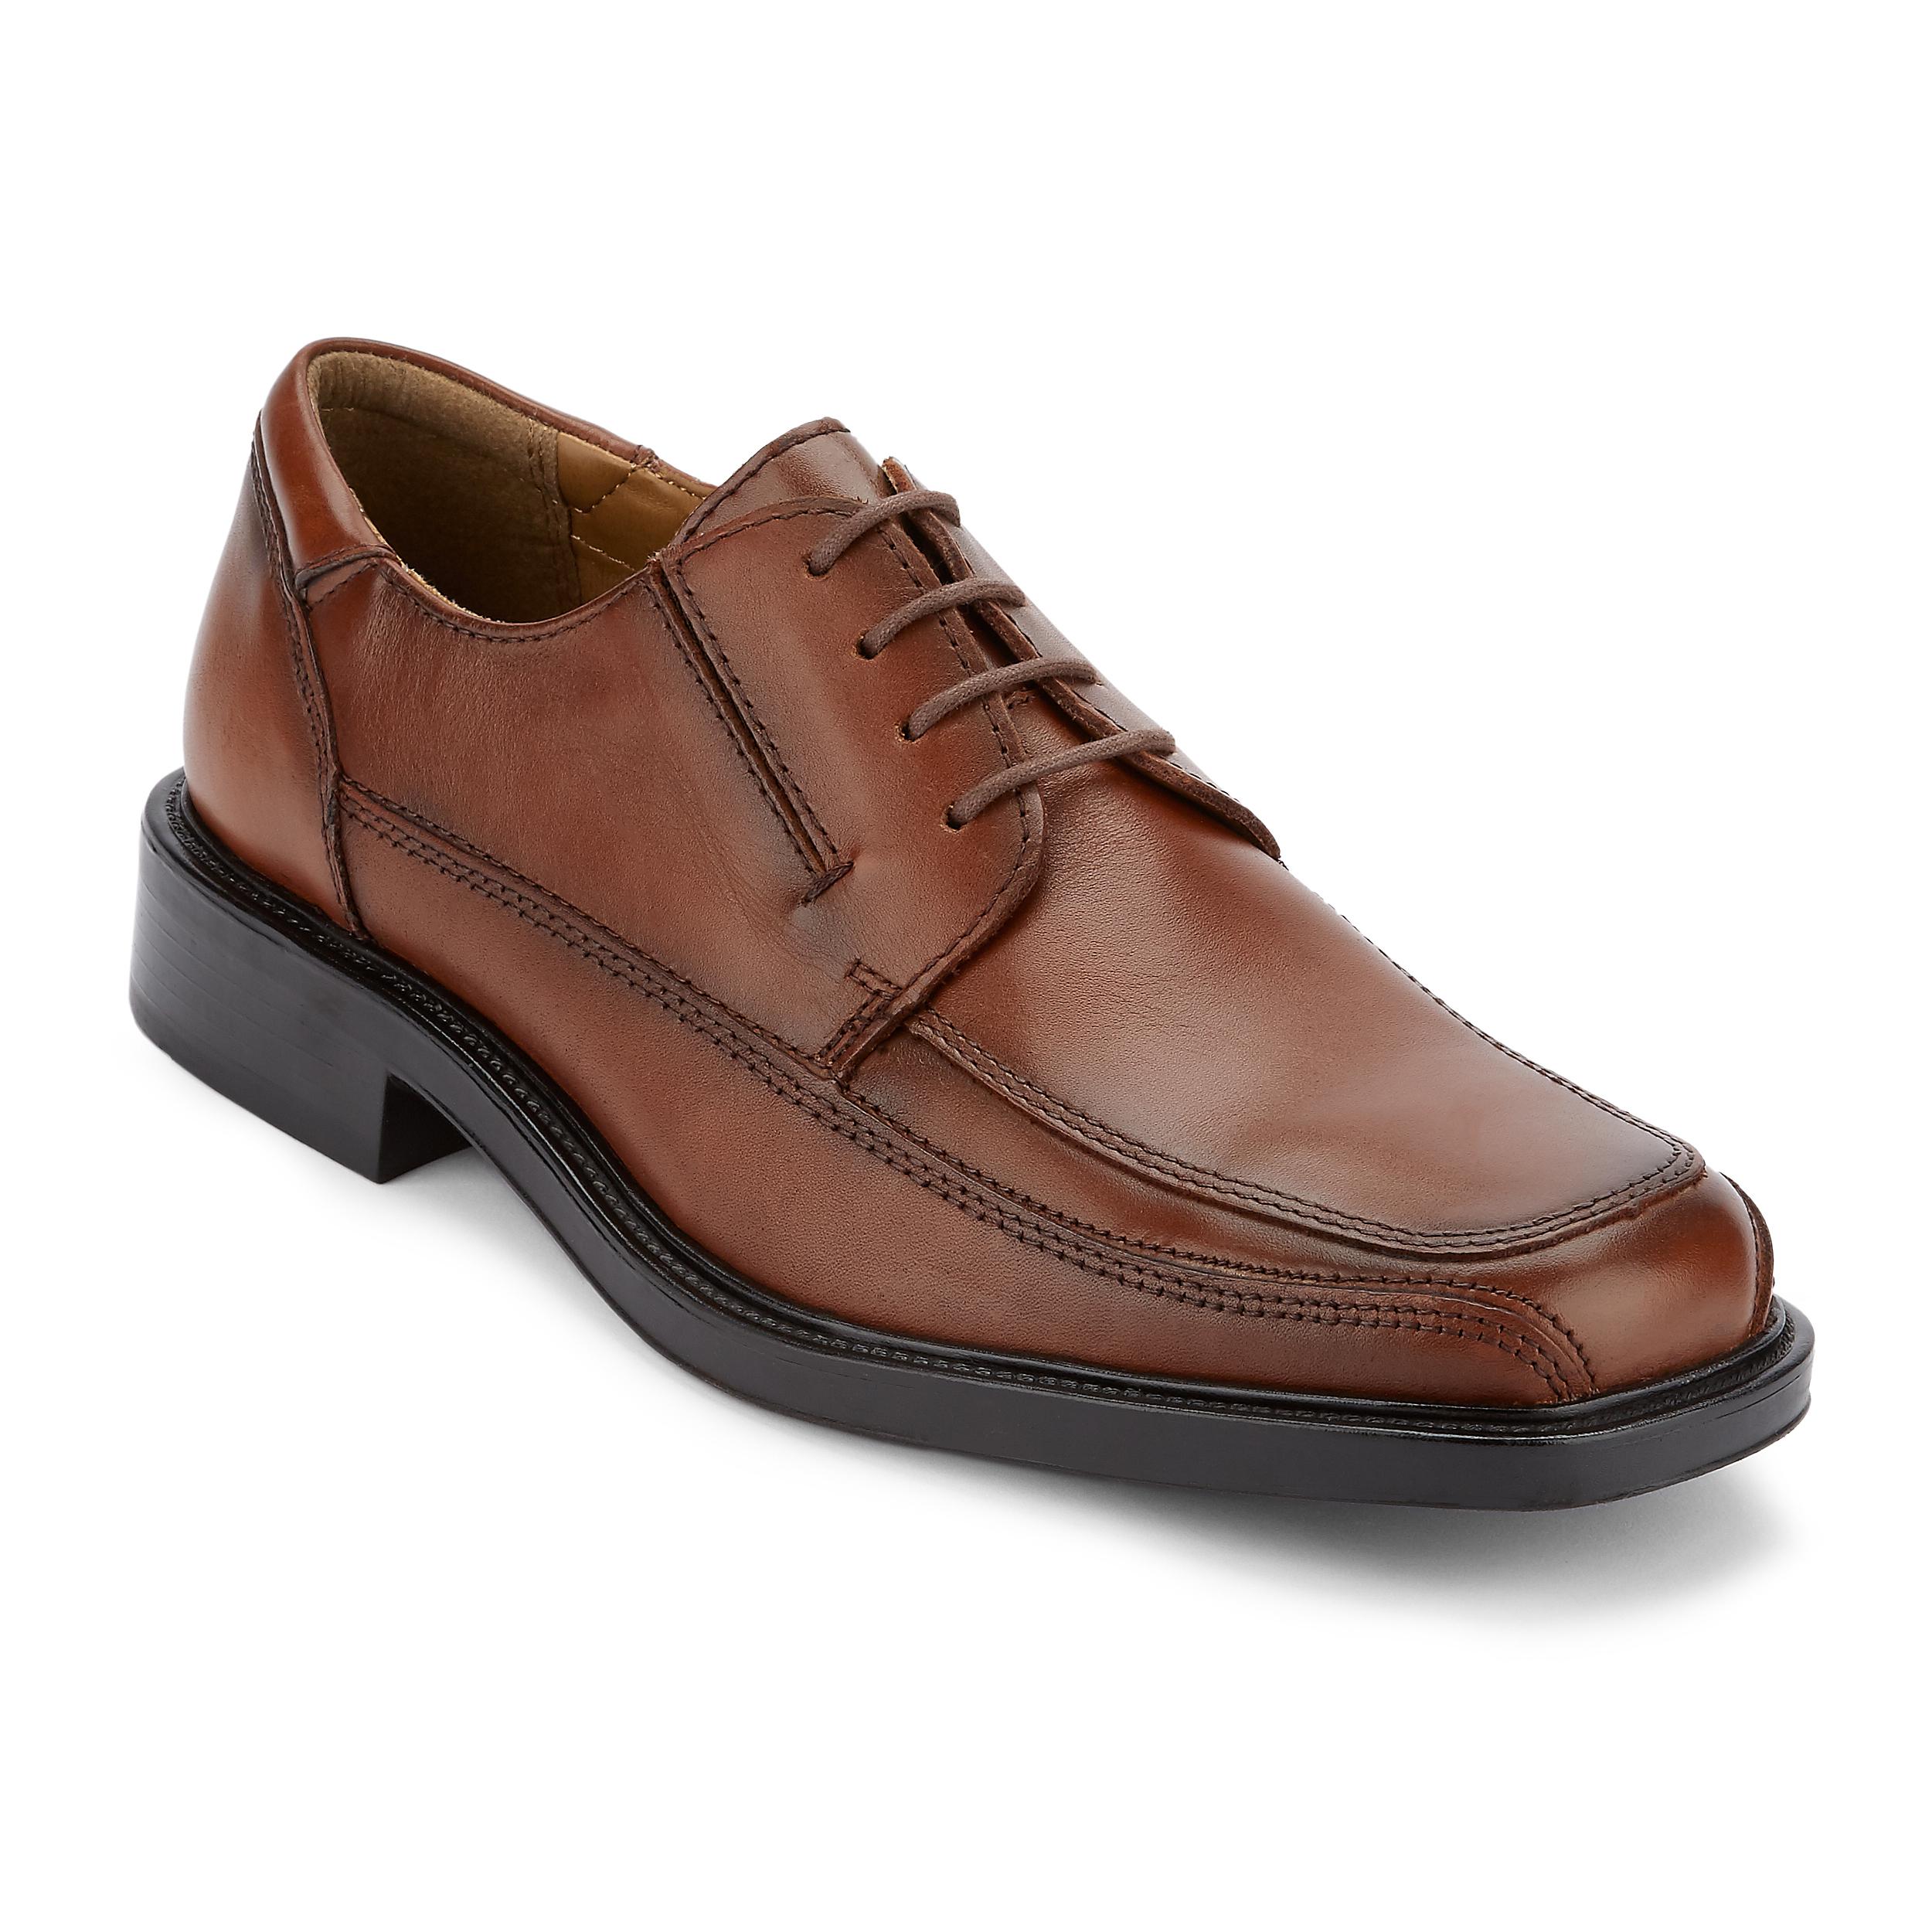 Dockers Men's Perspective Tan Oxford Shoe